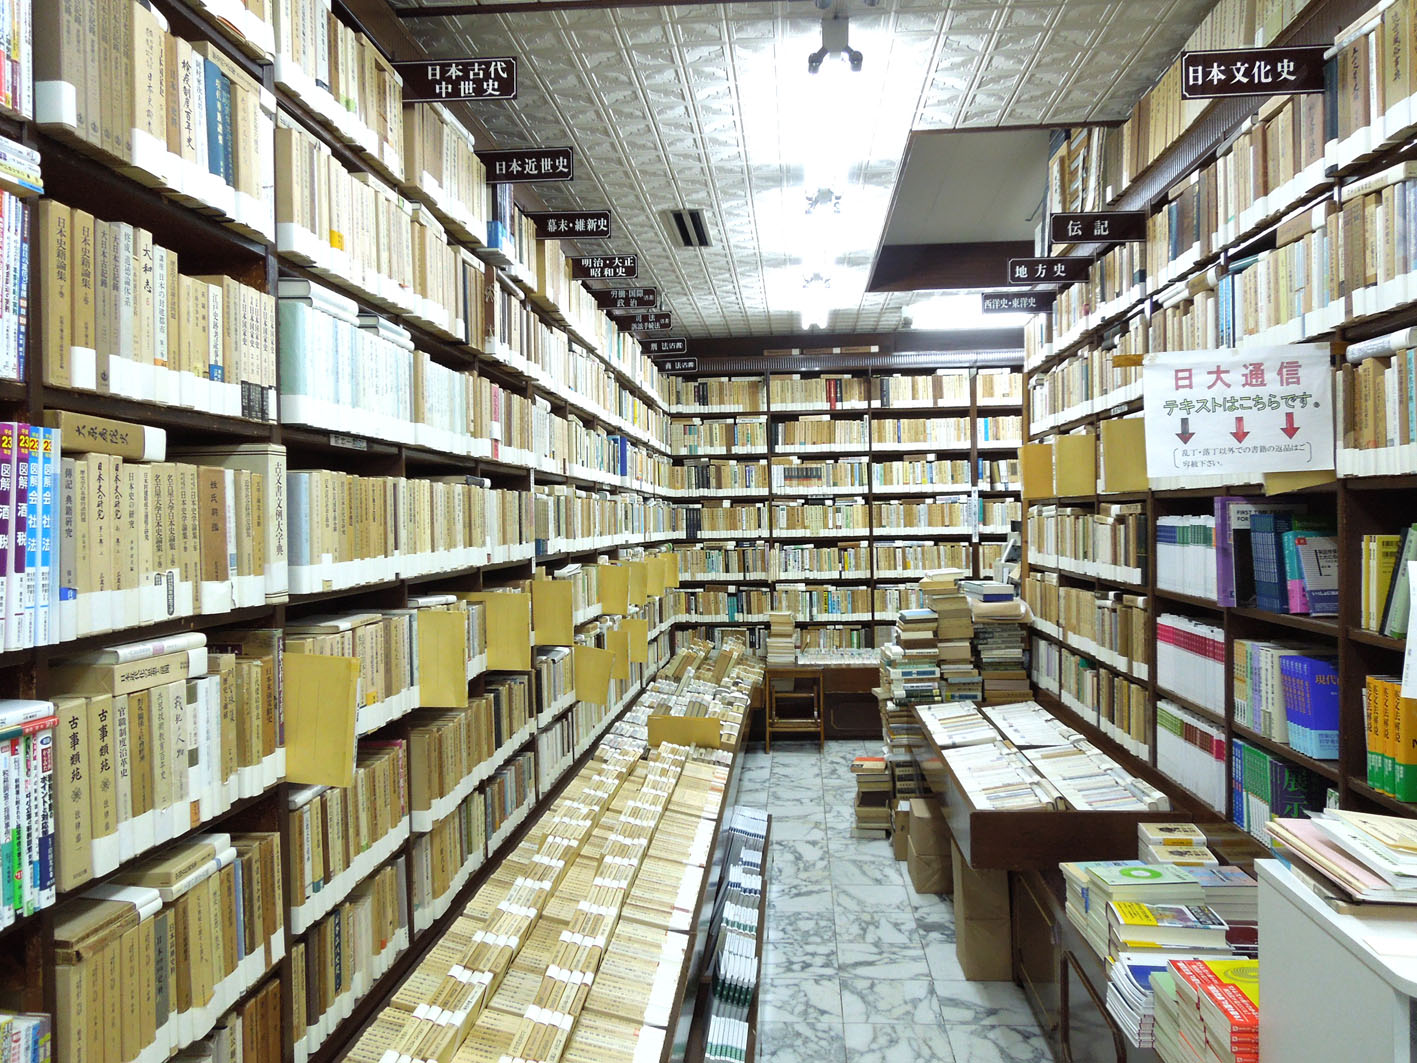 古書買取販売、古本買取販売、古書高価買取、法律書、歴史書なら丸沼書店にお任せ下さい。